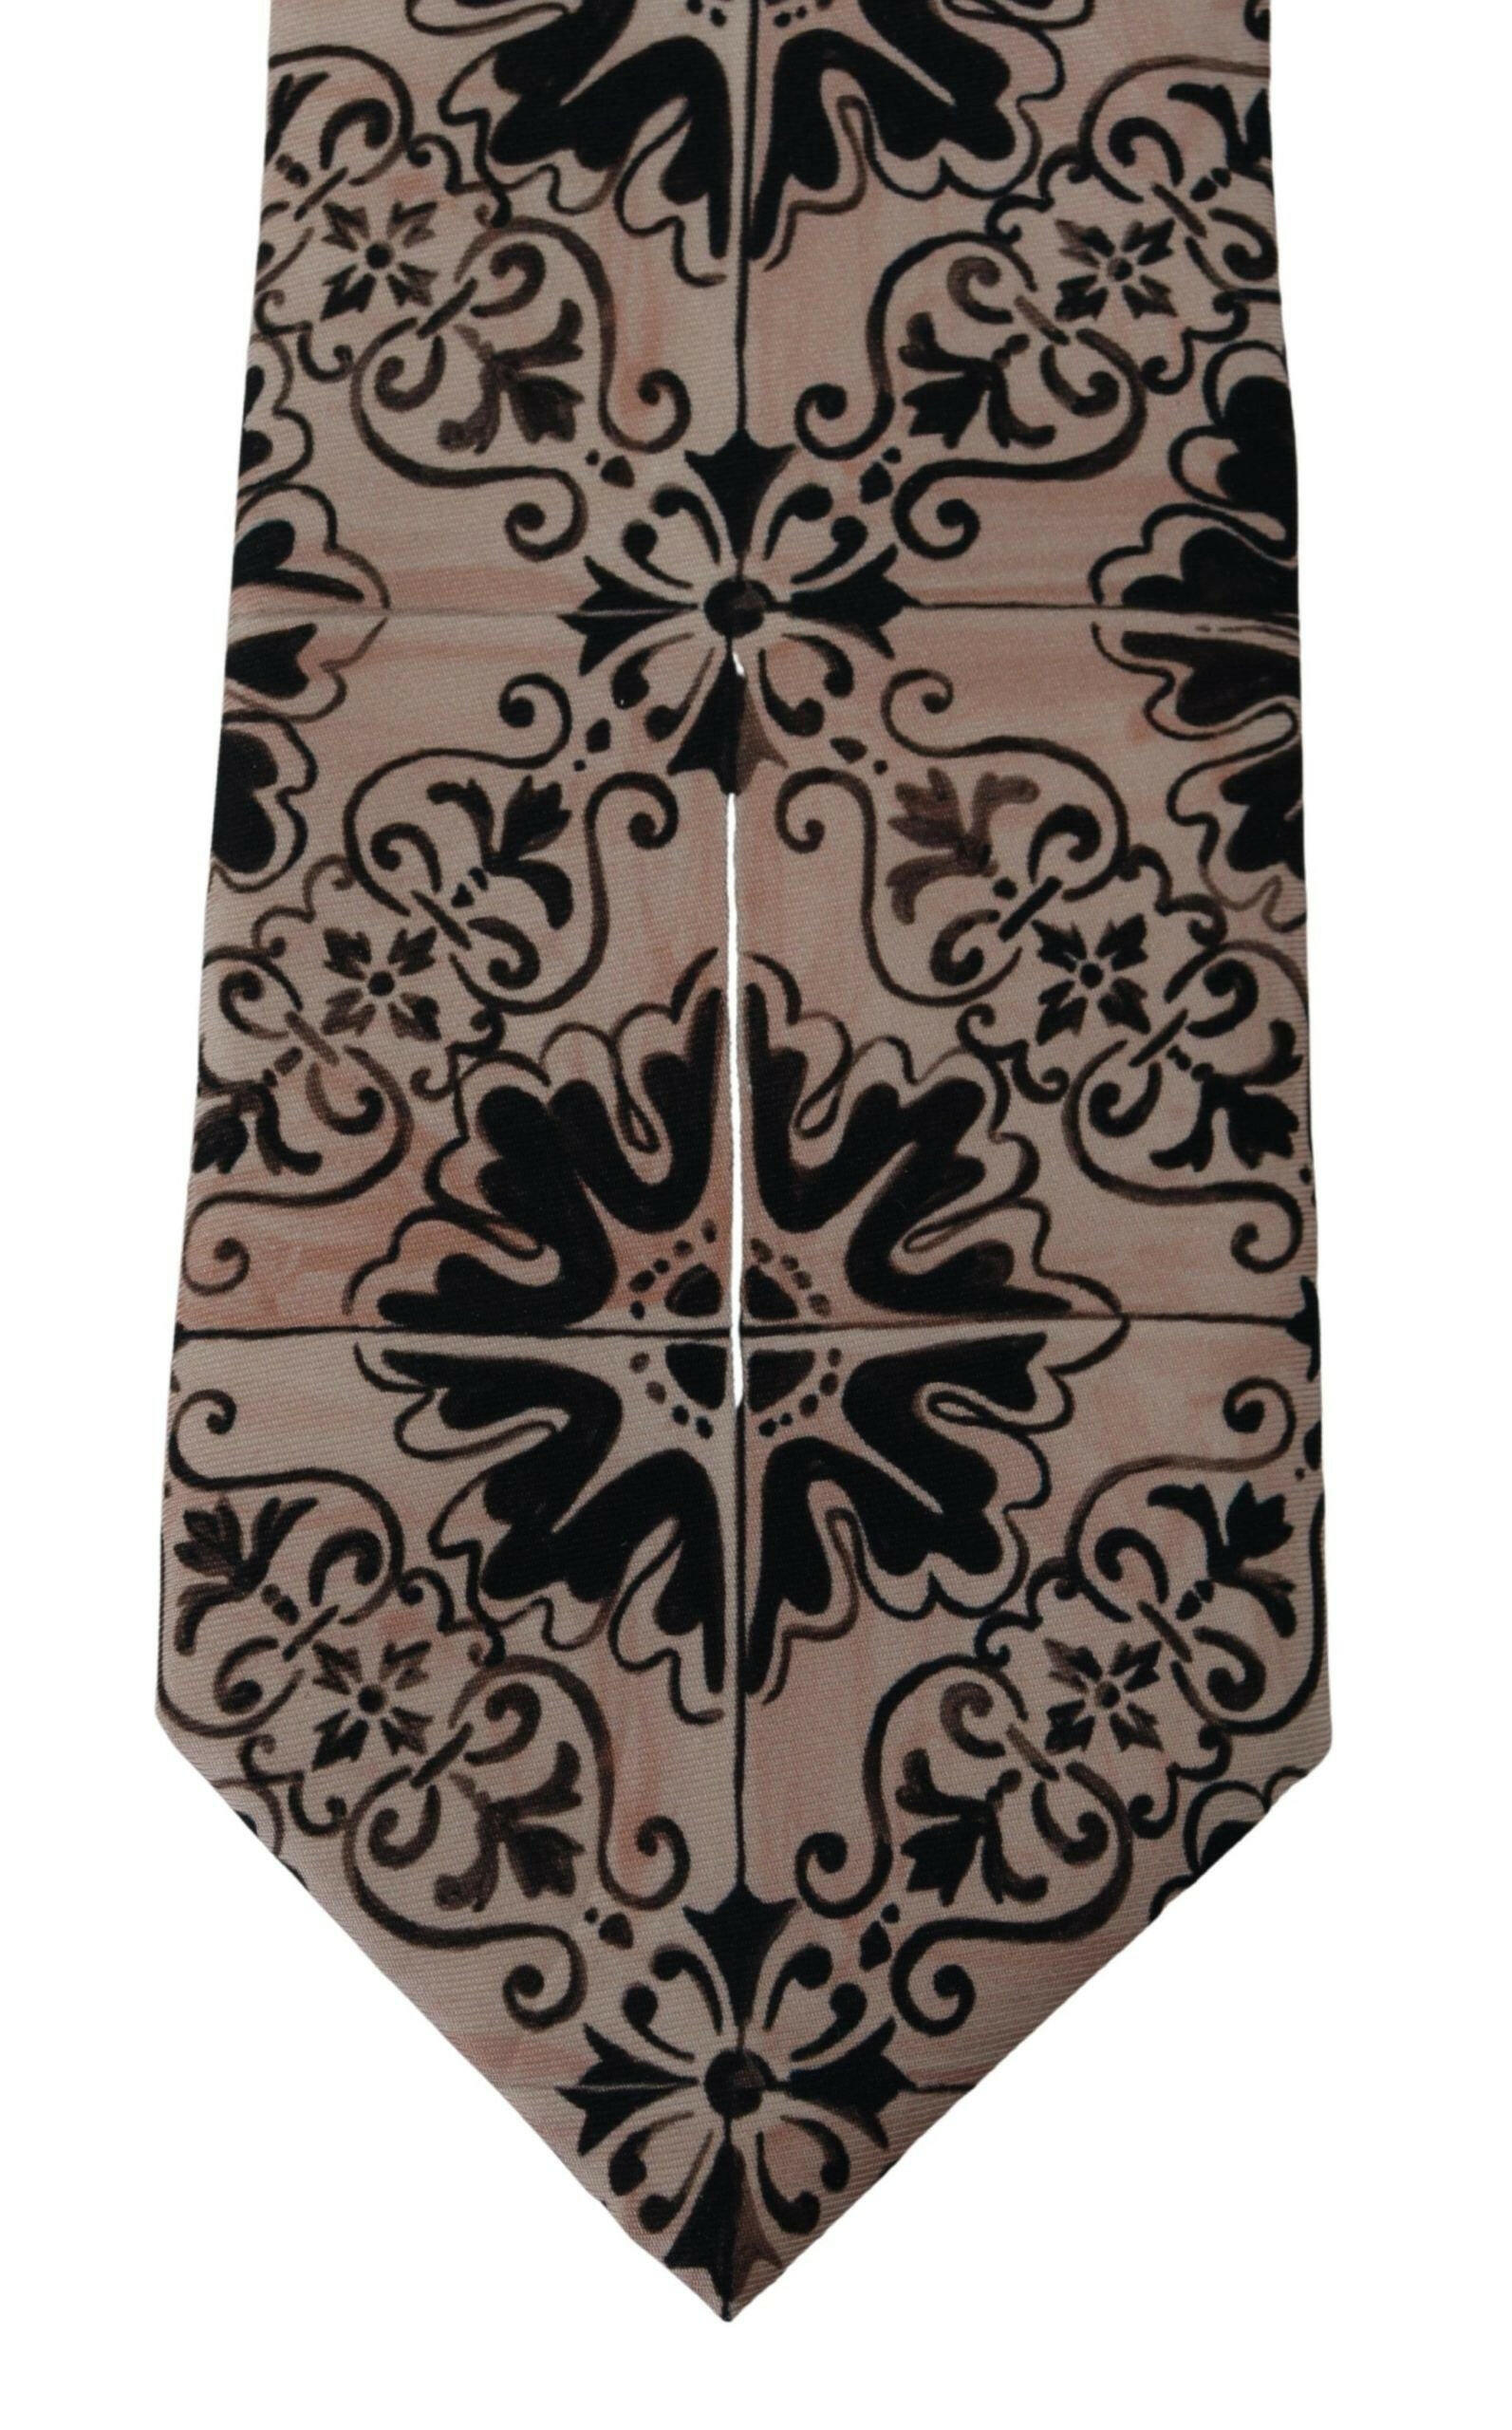 Dolce & Gabbana Beige Fantasy Pattern Necktie Accessory Black - GENUINE AUTHENTIC BRAND LLC  